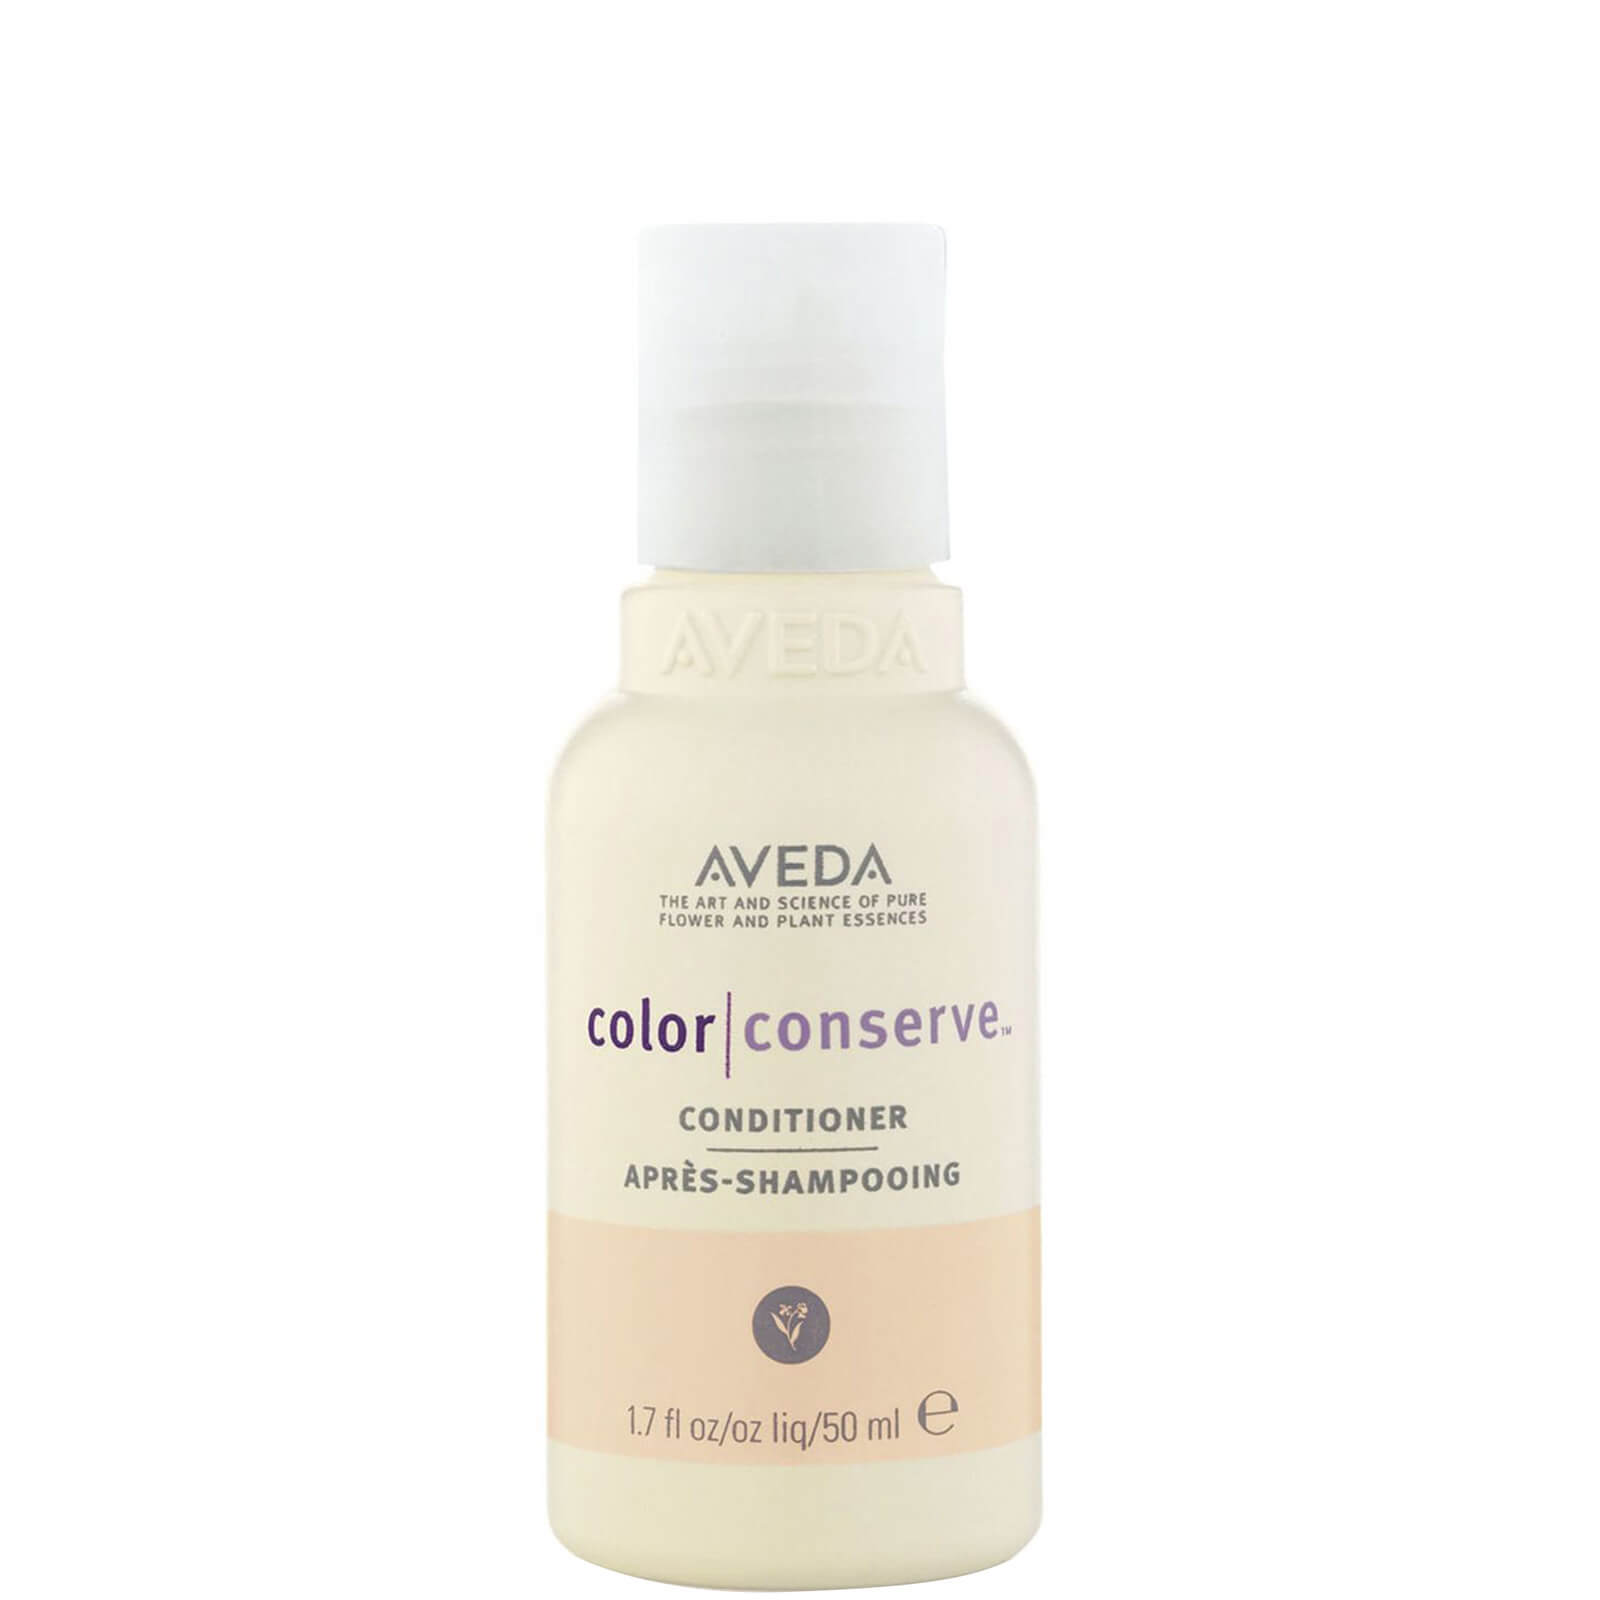 Aveda Color Conserve Conditioner 50ml